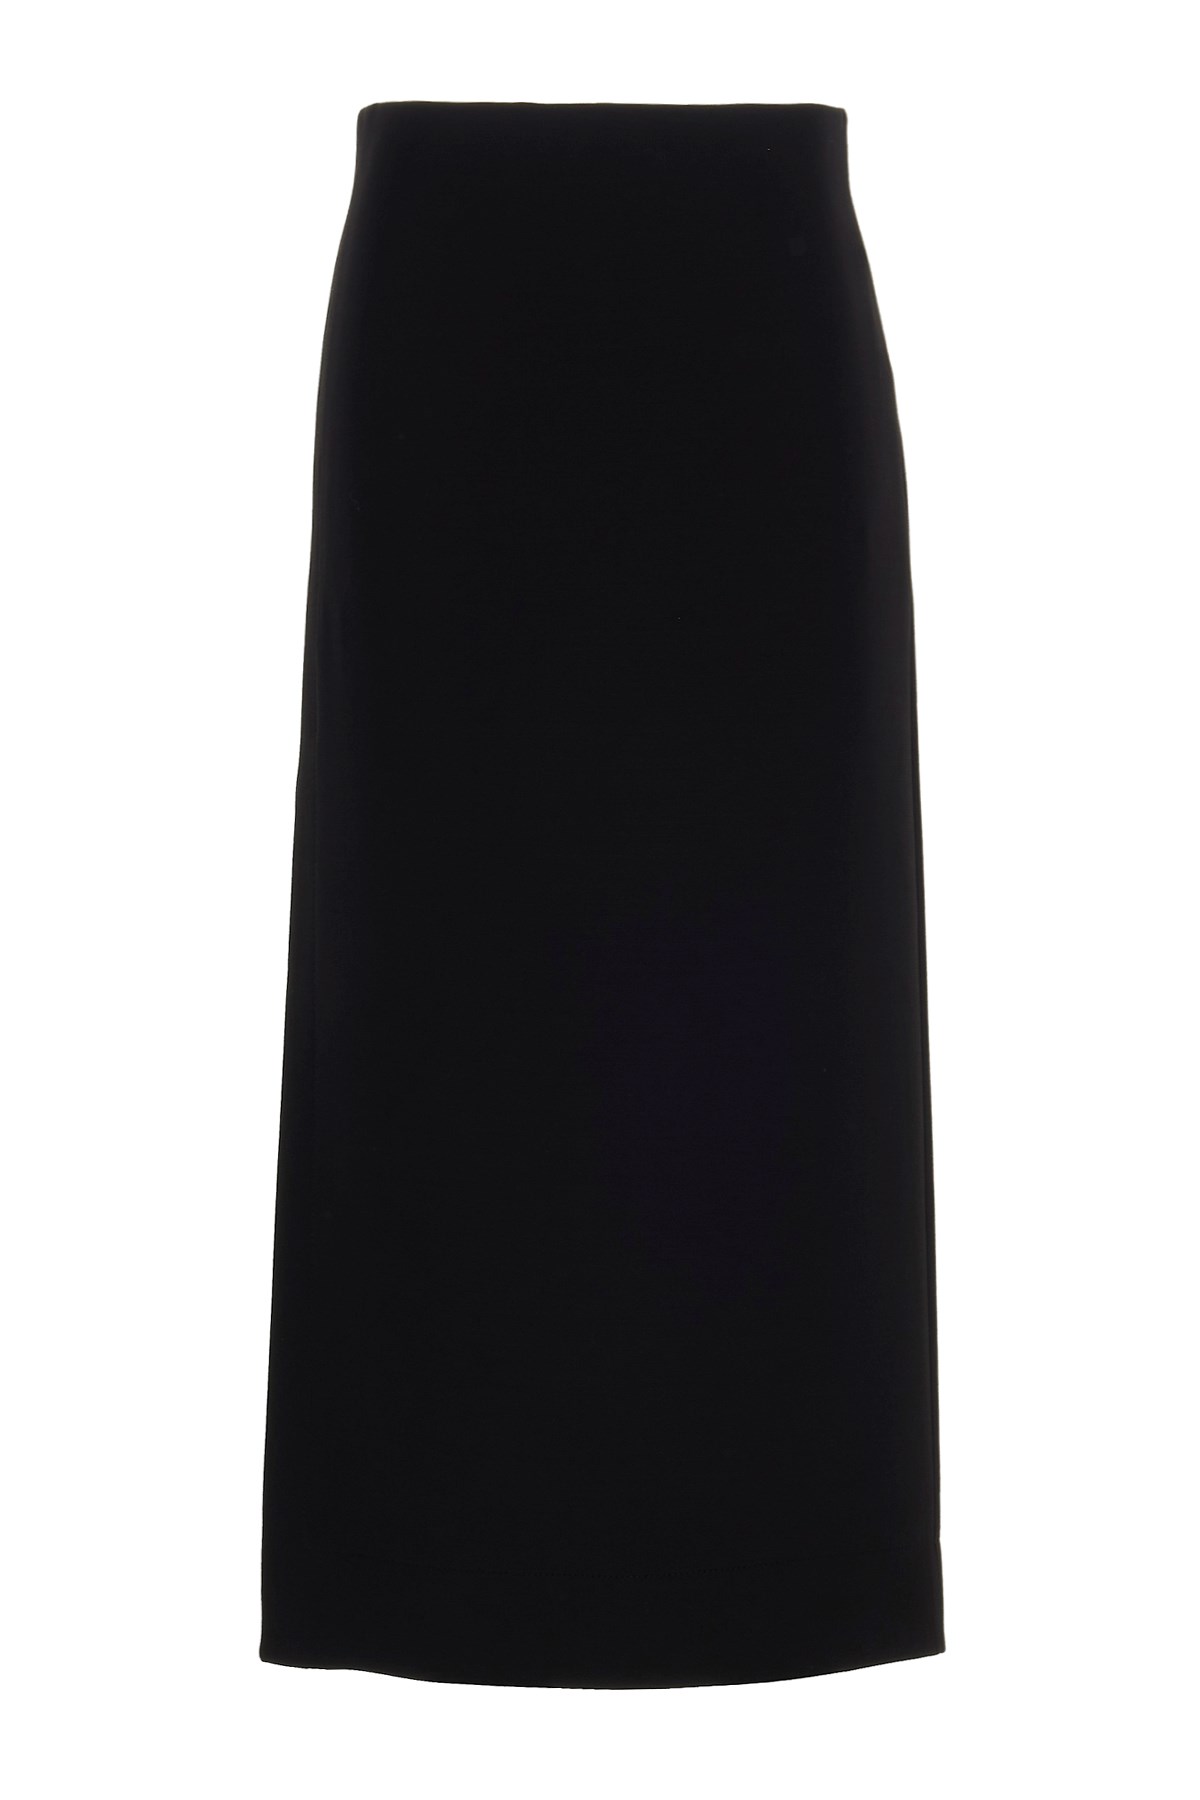 VALENTINO Longuette Skirt